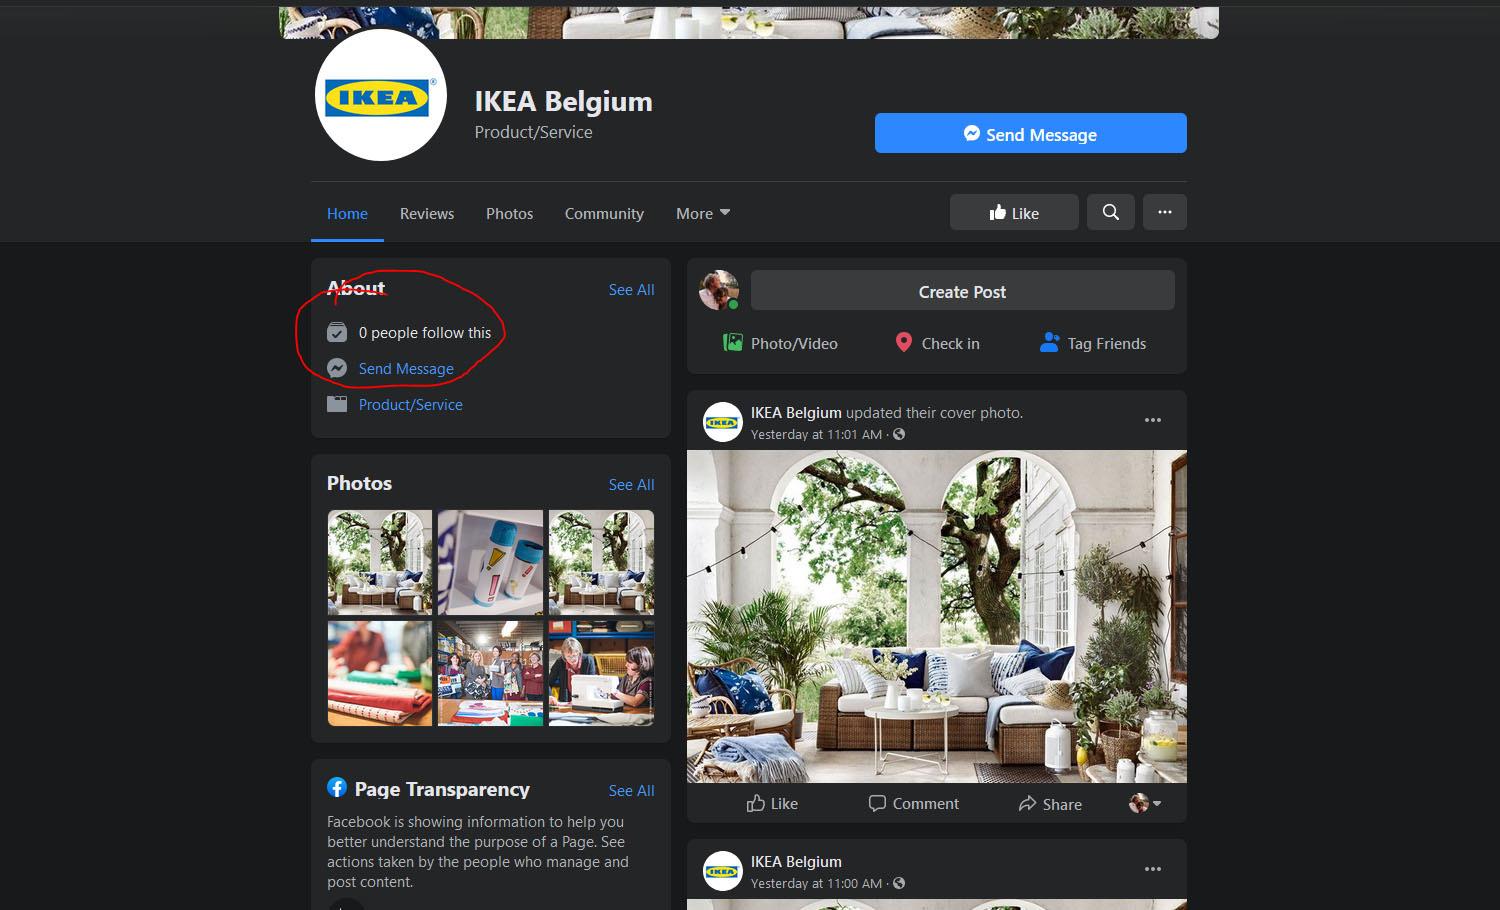 De nagemaakte pagina van Ikea Belgium ziet er verrassend echt uit. Alleen het aantal volgers en de oprichtingsdatum verklapt dat er iets niet klopt.